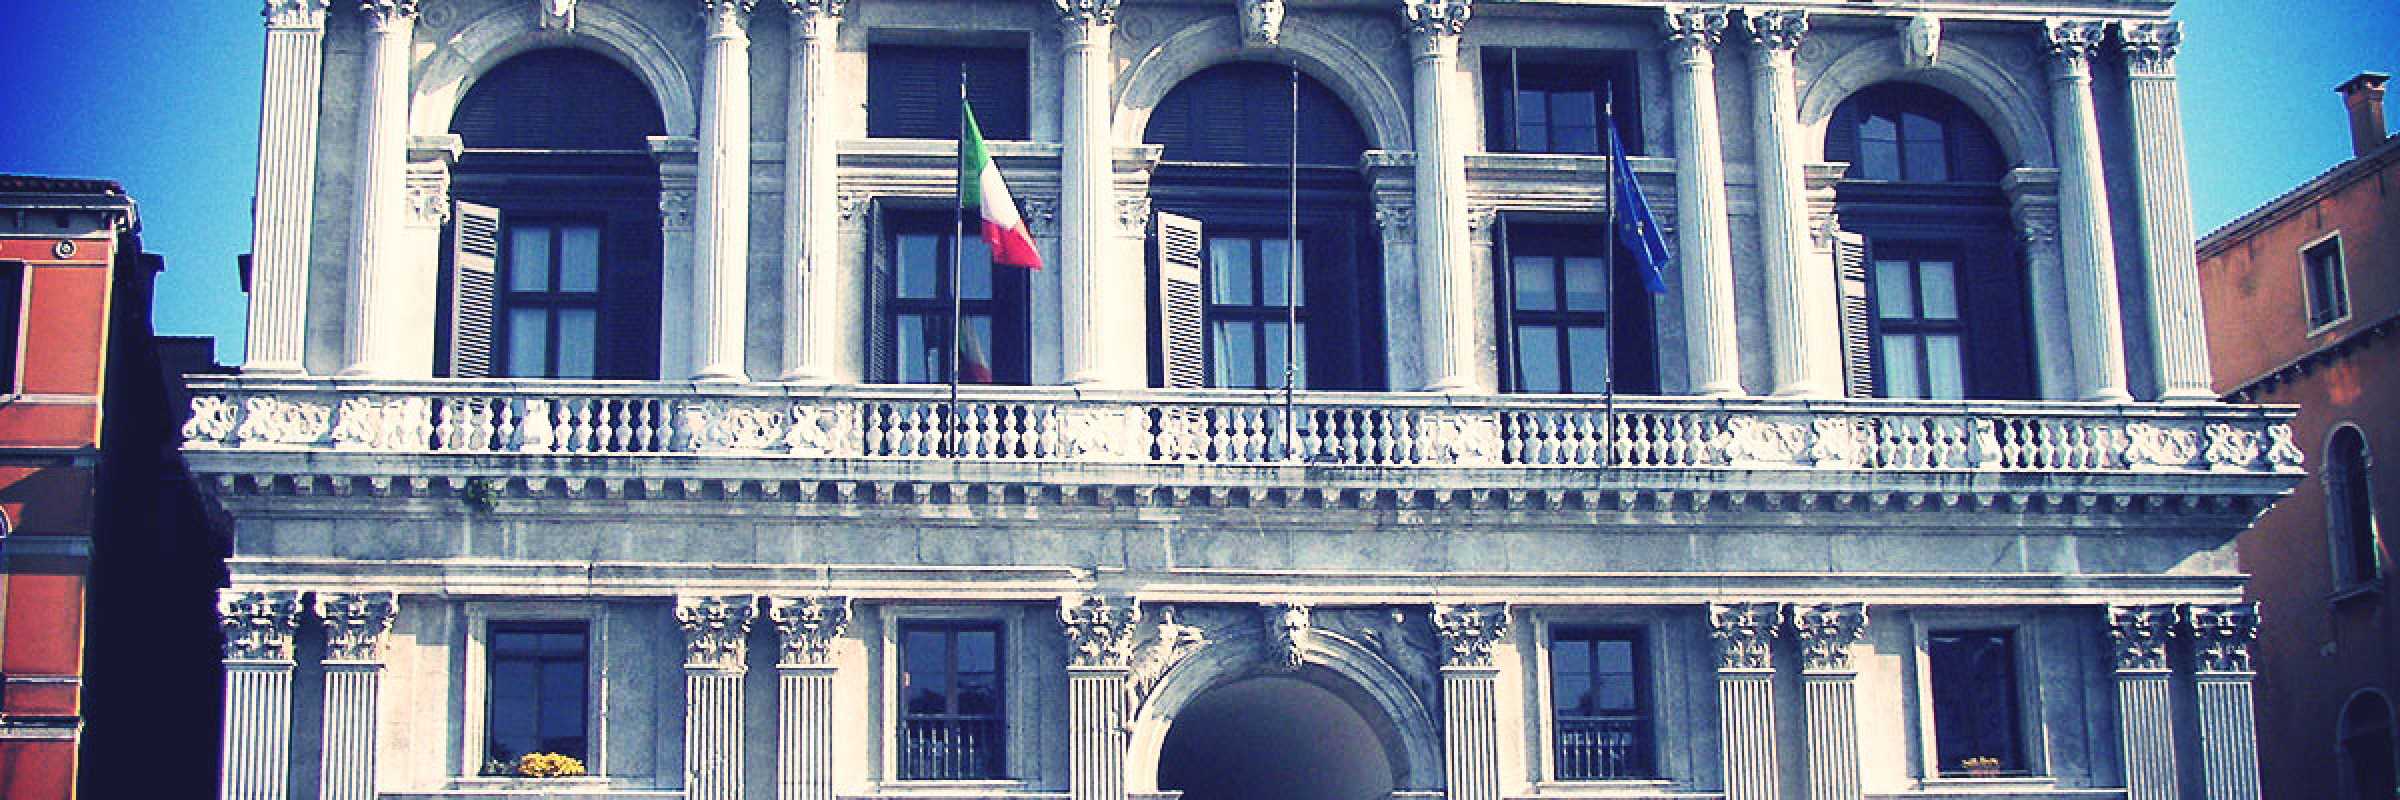 Palazzo Grimani a San Luca Venezia